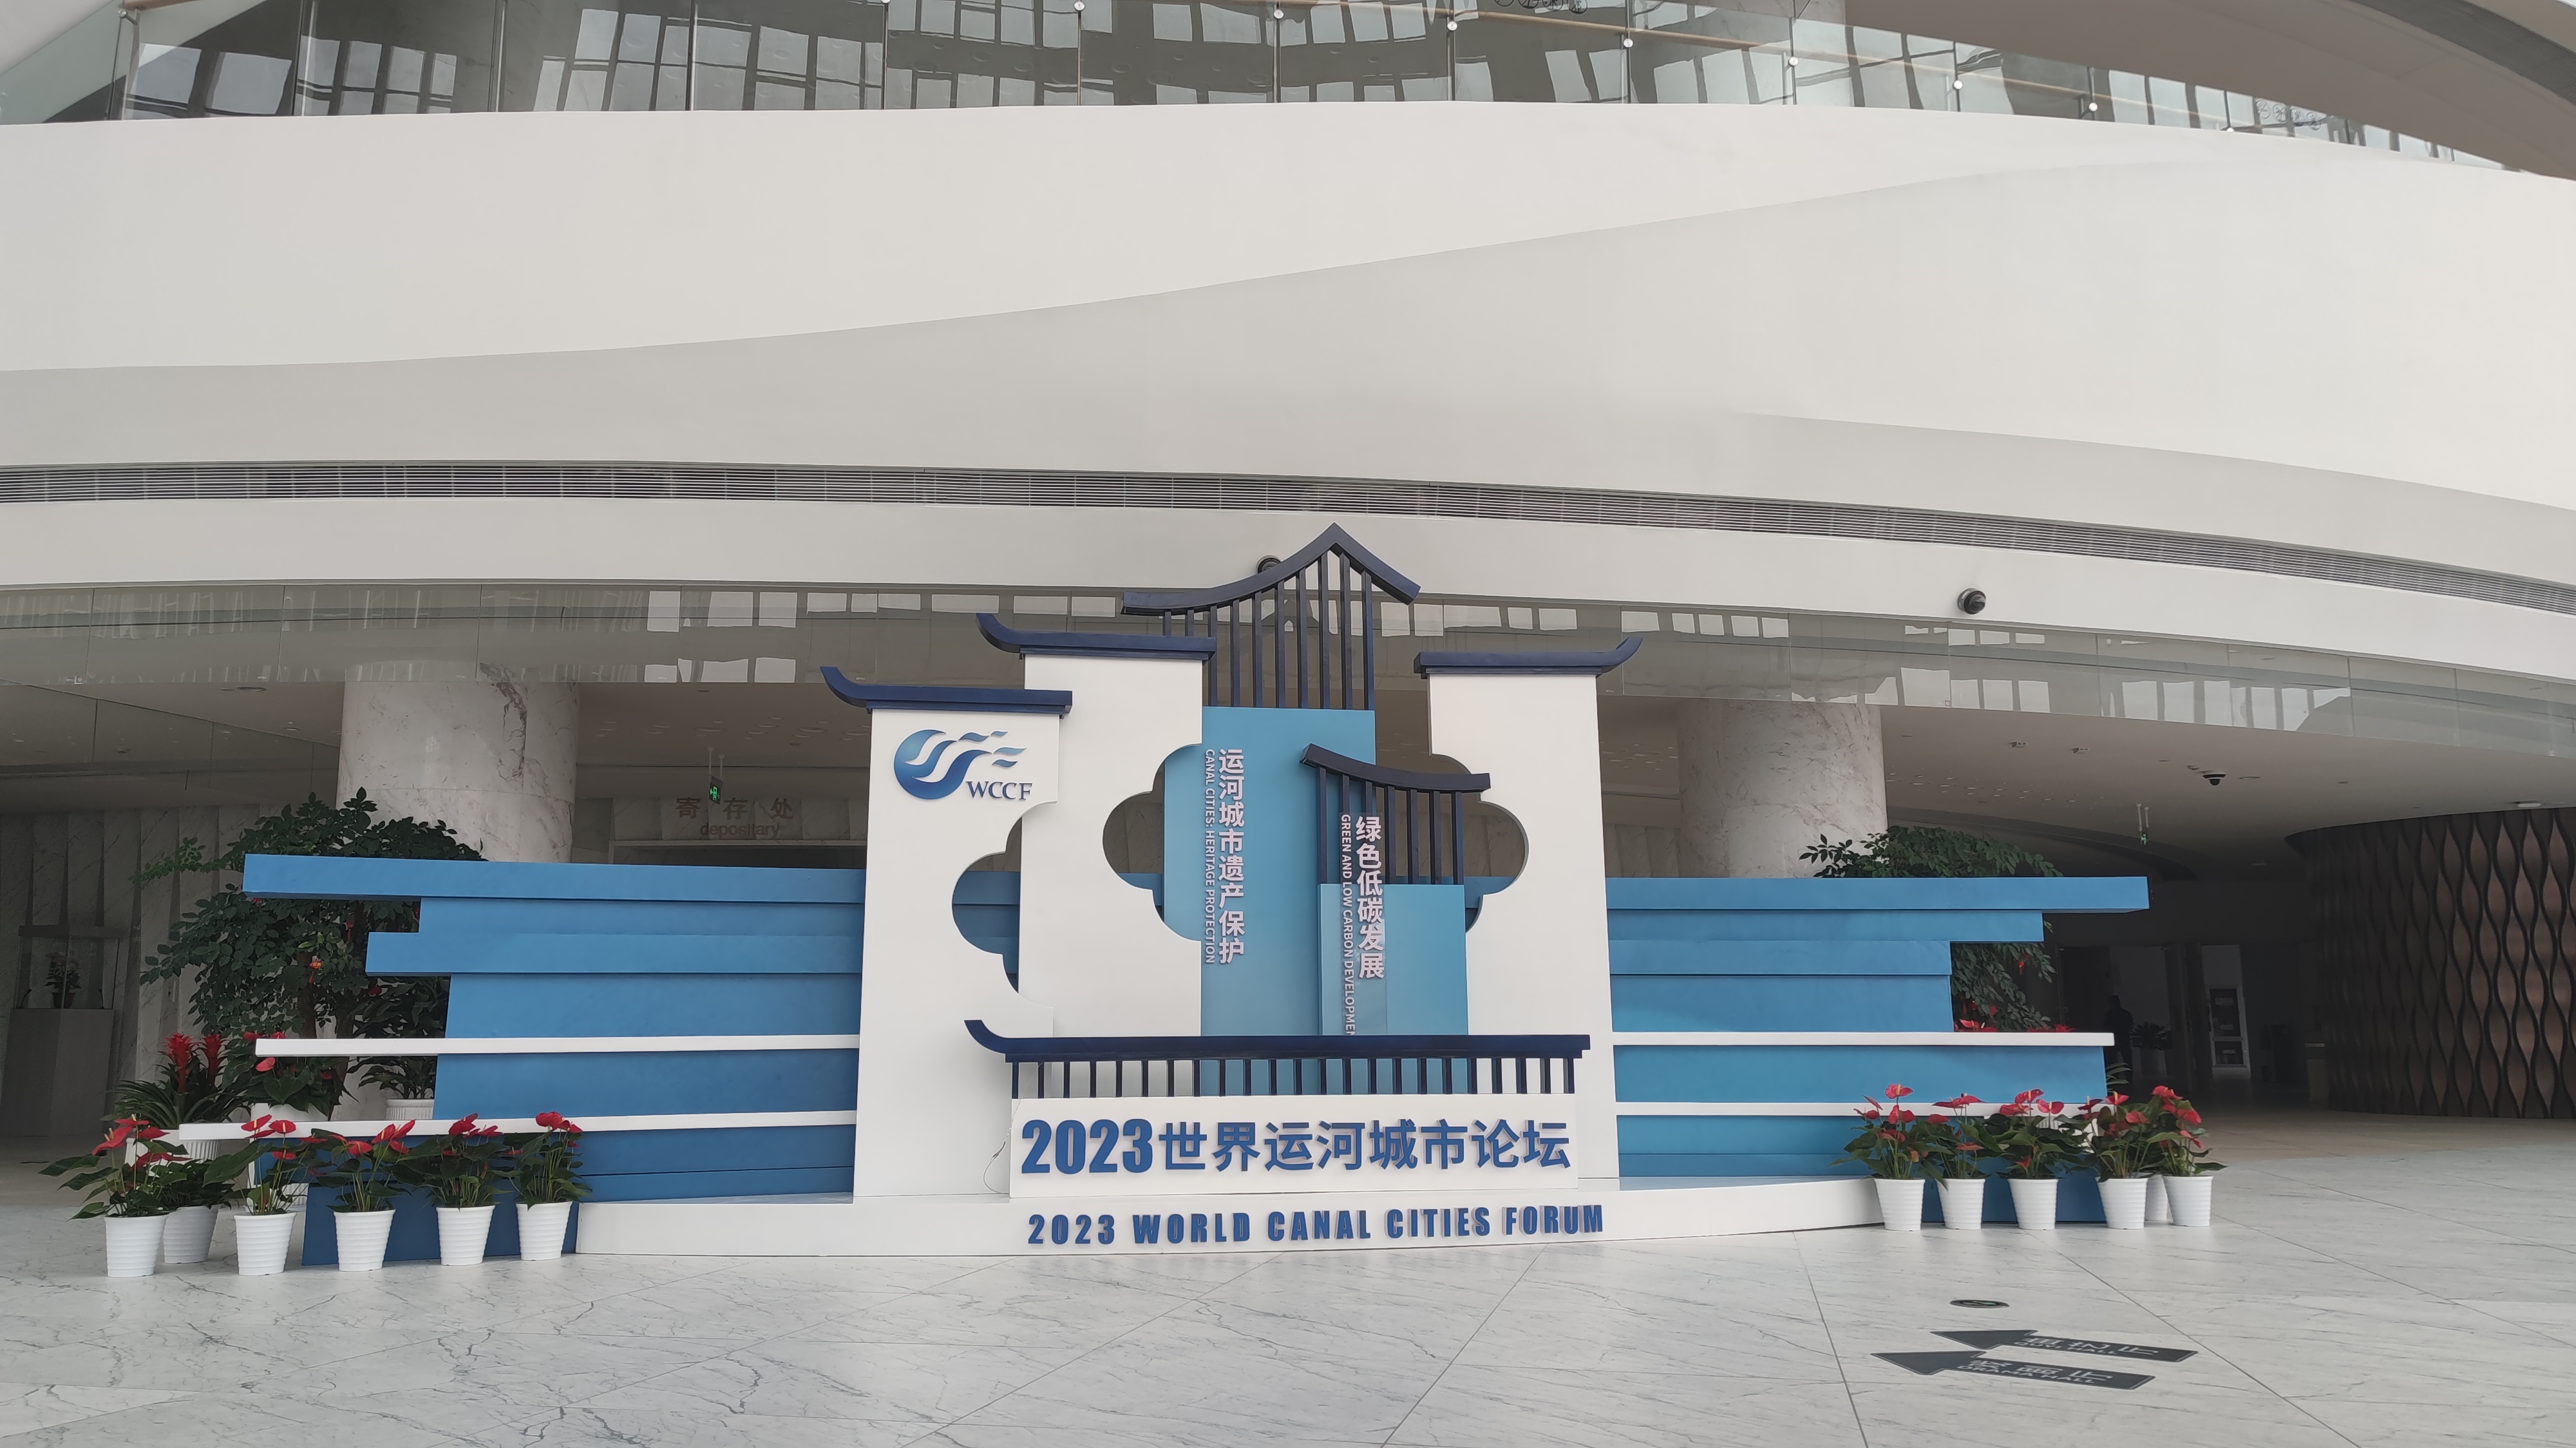 2023世界运河城市论坛即将于8月24日在扬州开幕。扬州市委网信办供图